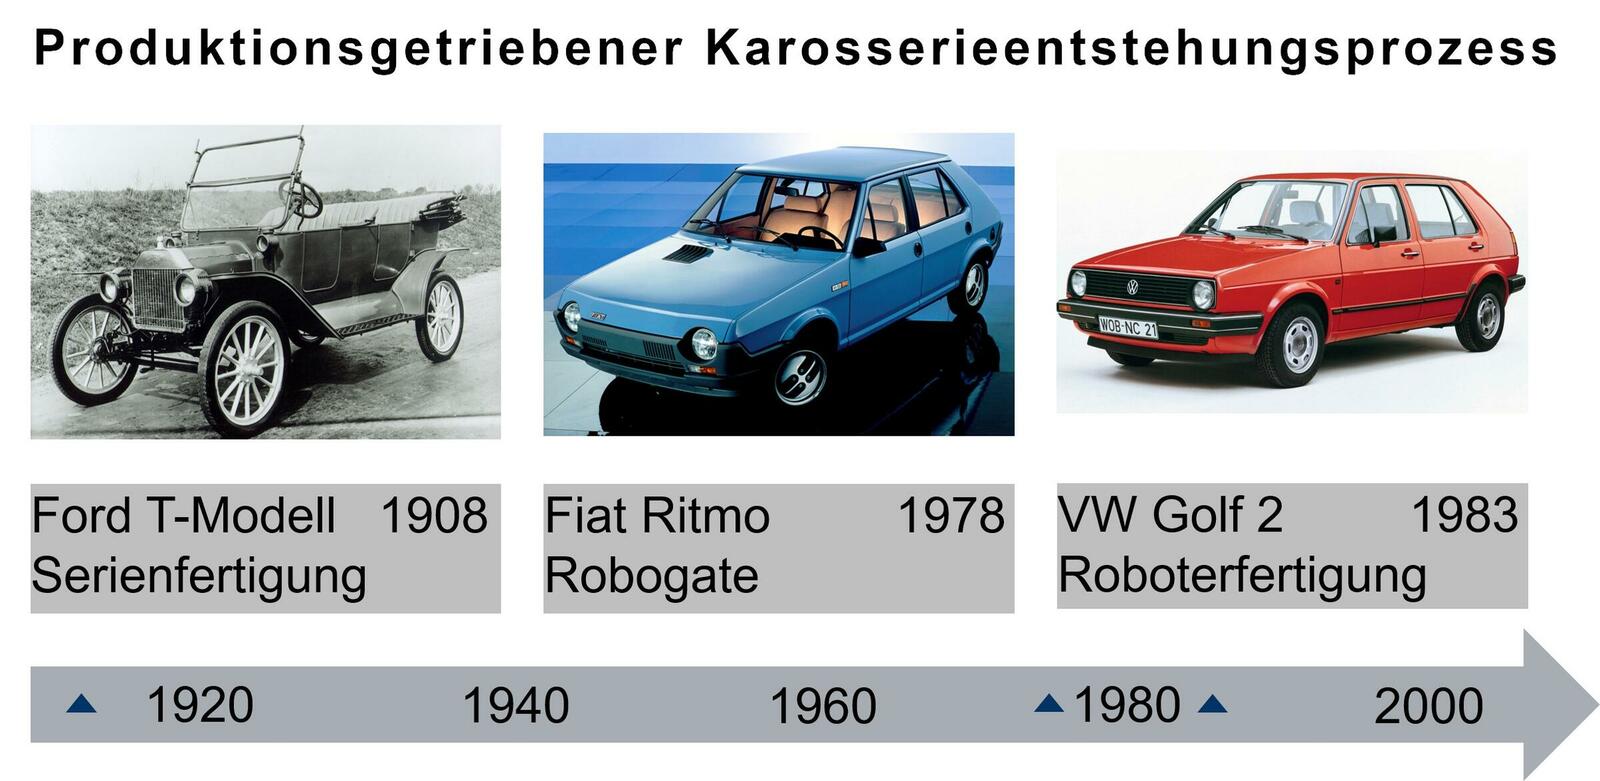 Historische Beispiele des produktionsgetriebenen Karosserieentstehungsprozesses mit Ford T-Modell (© Ford Motor Company), Fiat Ritmo (© Stellantis N.V.) und Volkswagen Golf 2 (© Volkswagen AG)